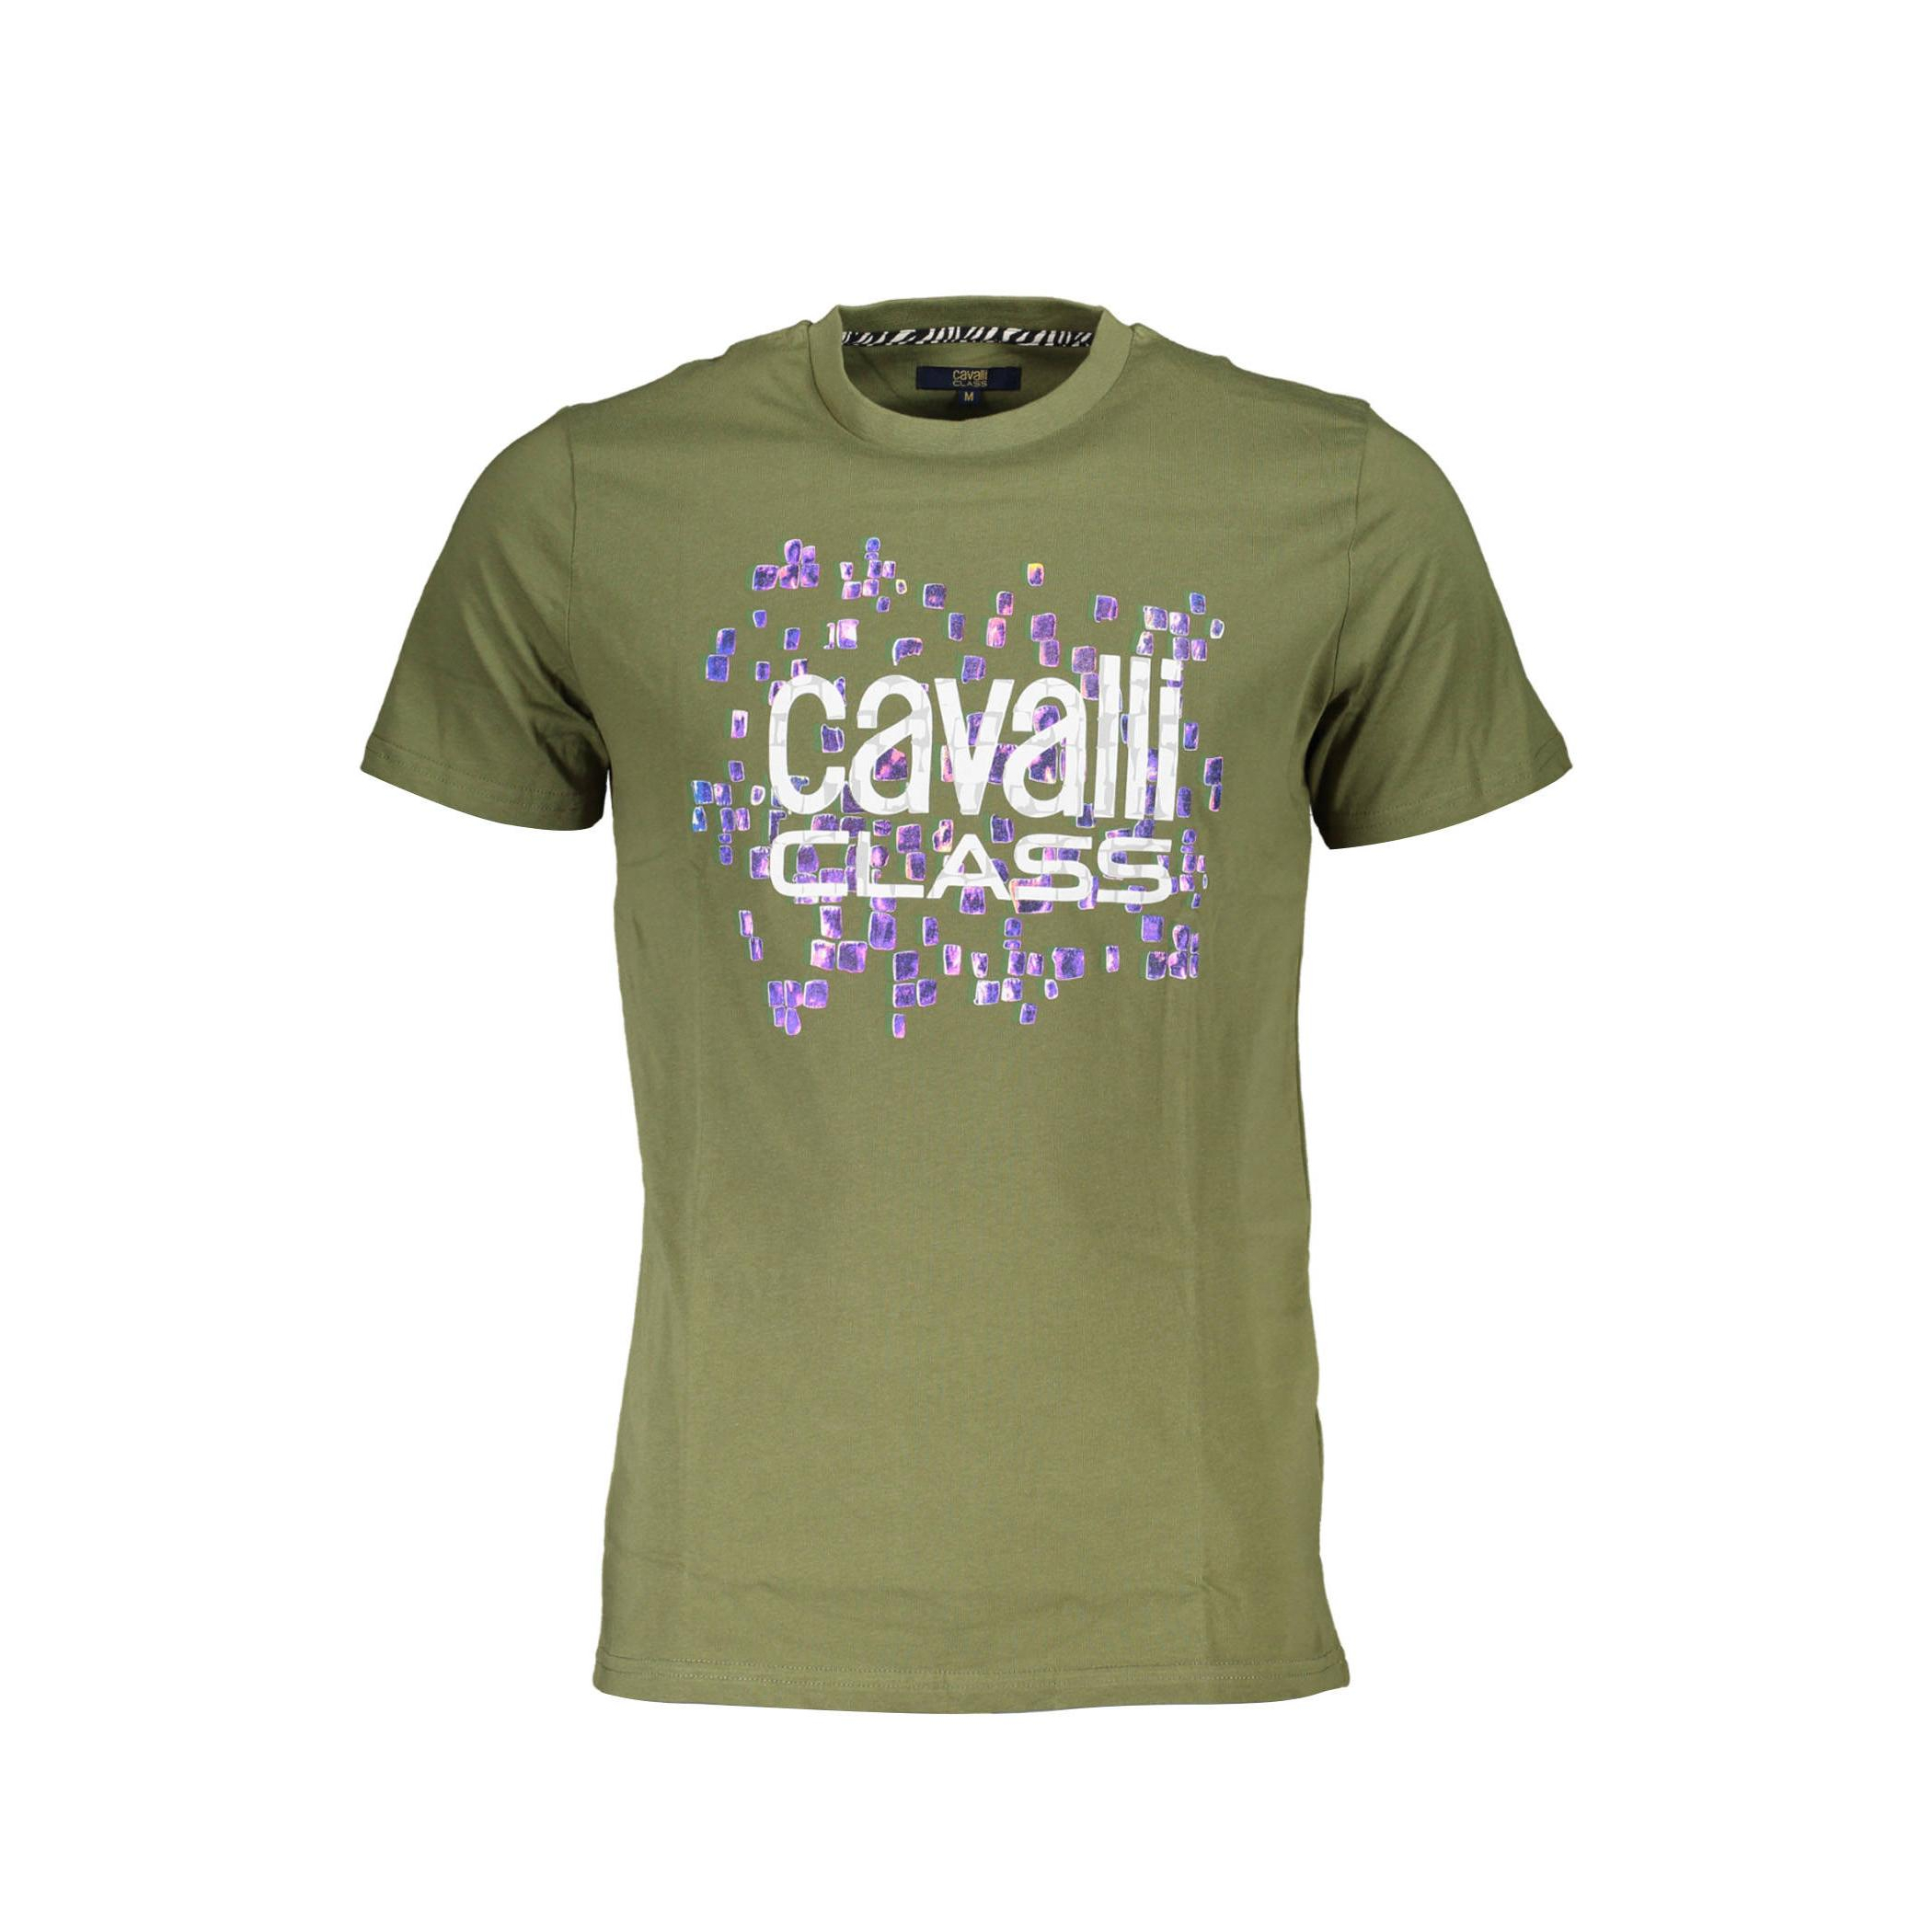 Снимка на Мъжка тениска с къс ръкав CAVALLI CLASS